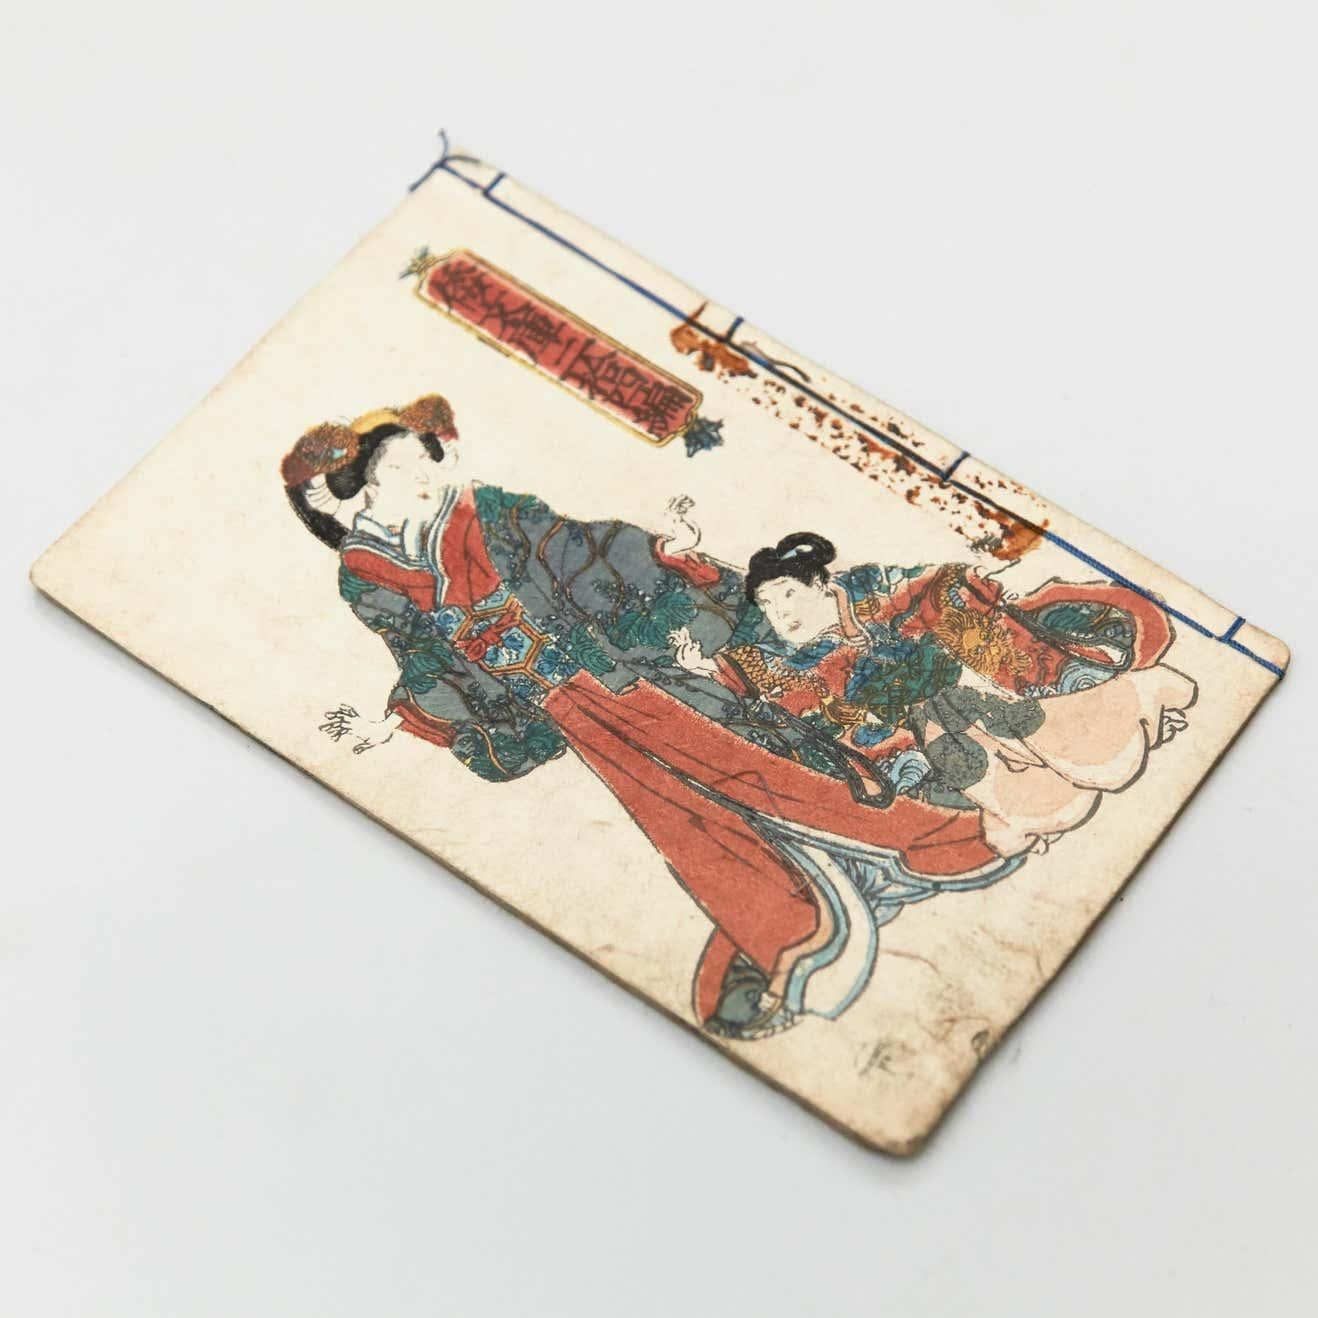 Ancien Kusazoshibook japonais Période Edo, vers 1840
Livre imprimé en noir et blanc

Dimensions du livre 176 mm x 117 mm

Il y a des dommages parce que c'est un article ancien comme nous le montrons sur les photos.

.